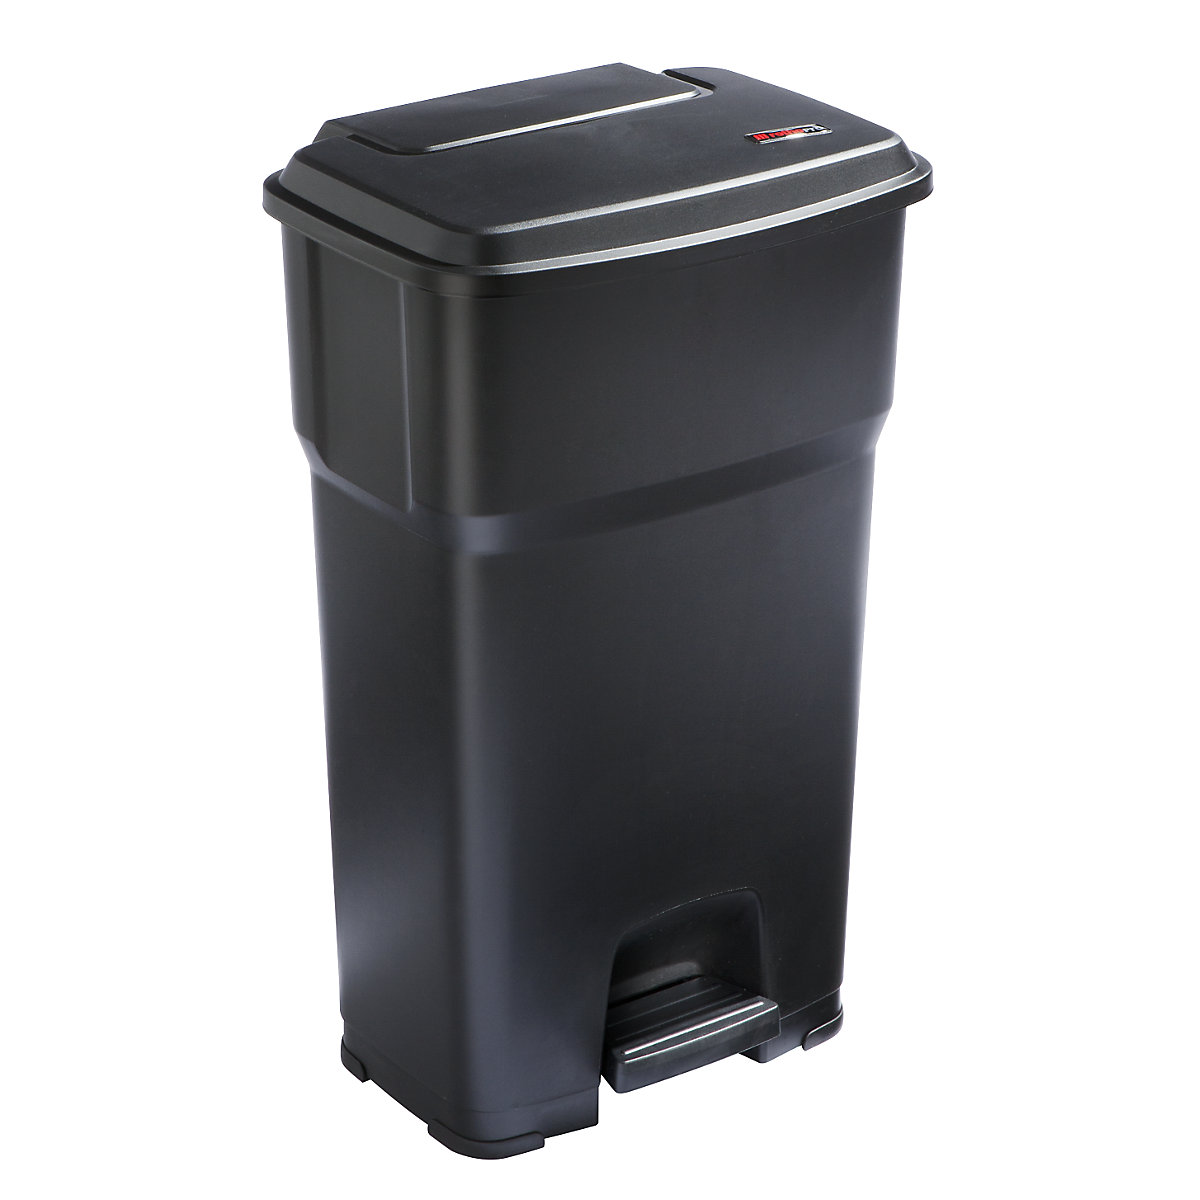 rothopro – Collecteur de déchets à pédale HERA, capacité 85 l, l x h x p 490 x 790 x 390 mm, noir